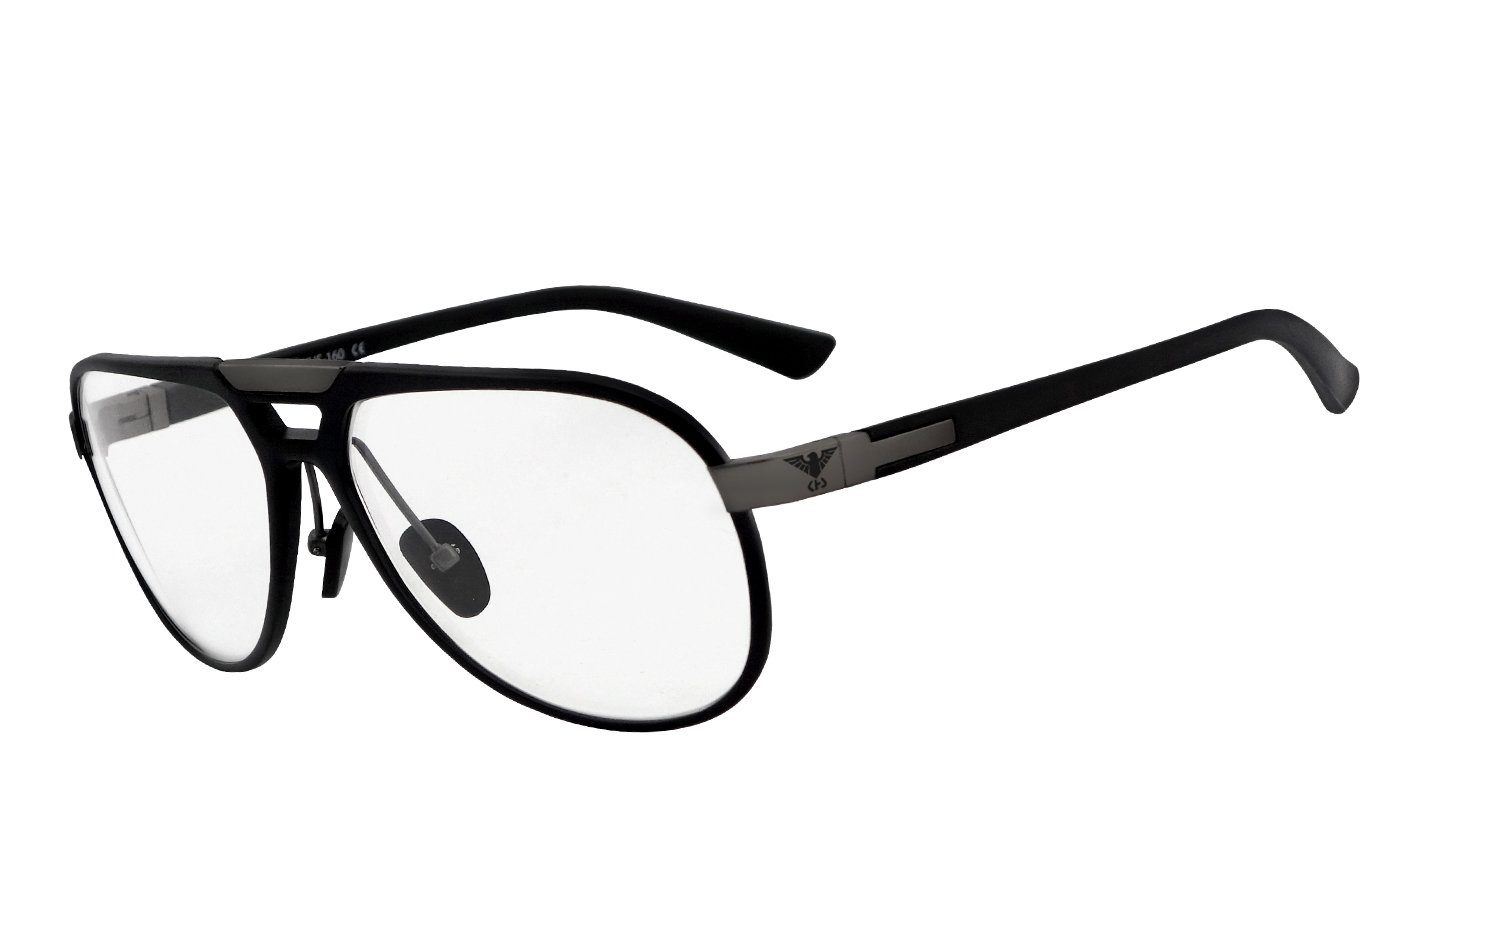 Sonnenbrille KHS 160 Brillengestell